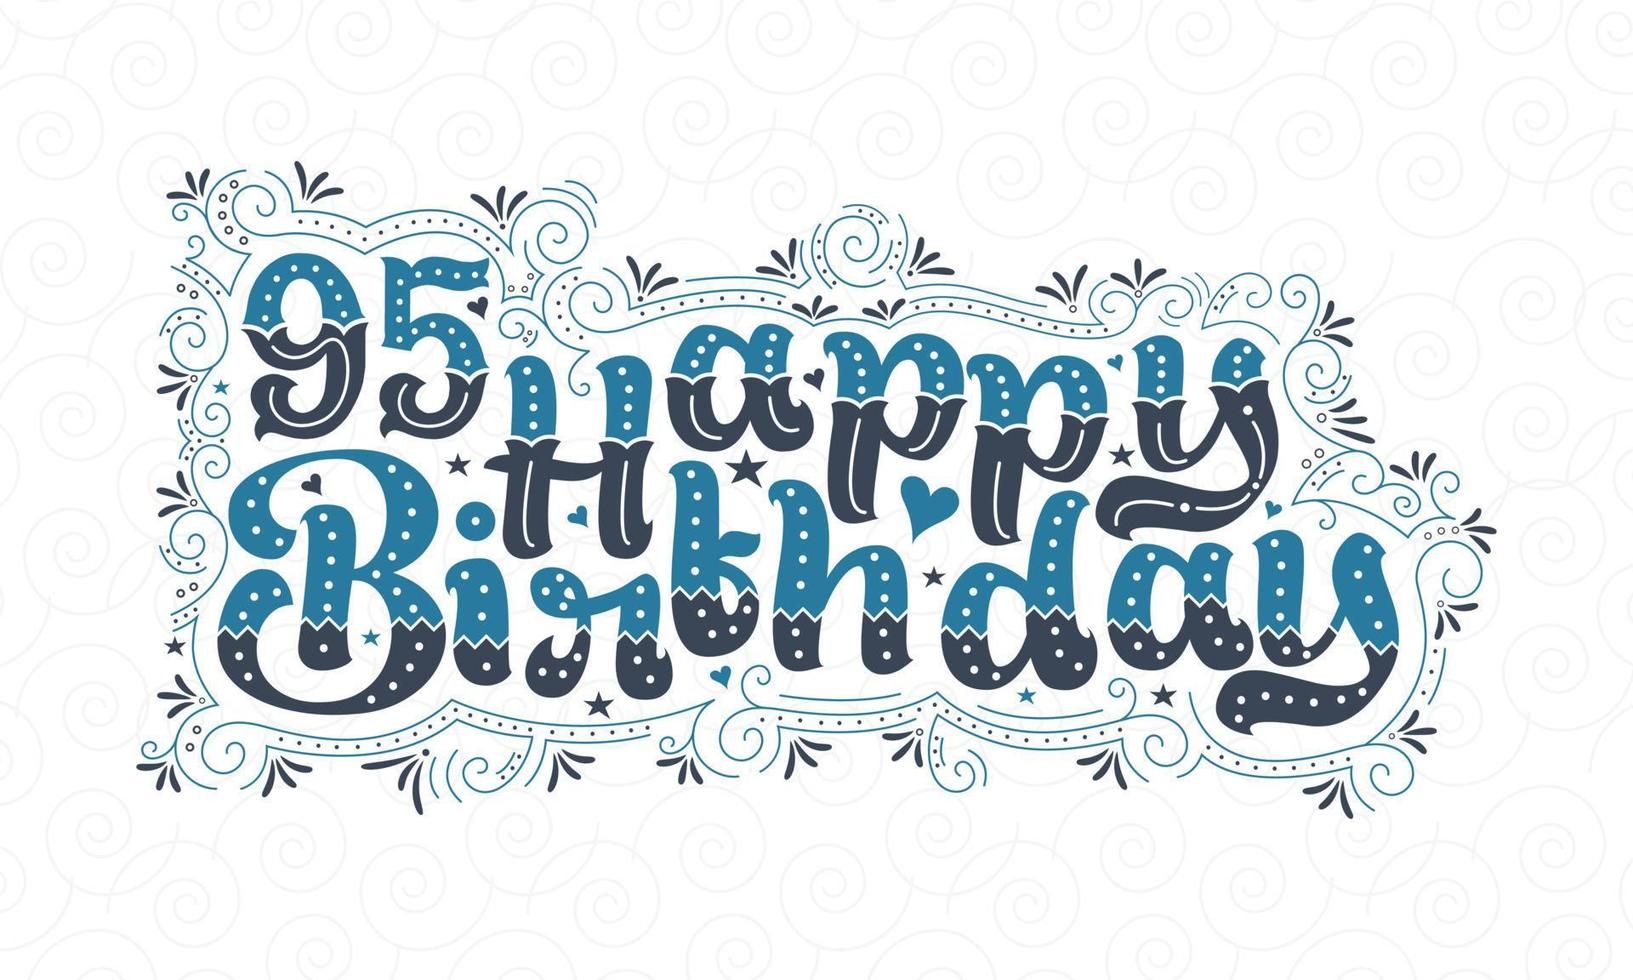 95. Happy Birthday Schriftzug, 95 Jahre Geburtstag schönes Typografie-Design mit blauen und schwarzen Punkten, Linien und Blättern. vektor